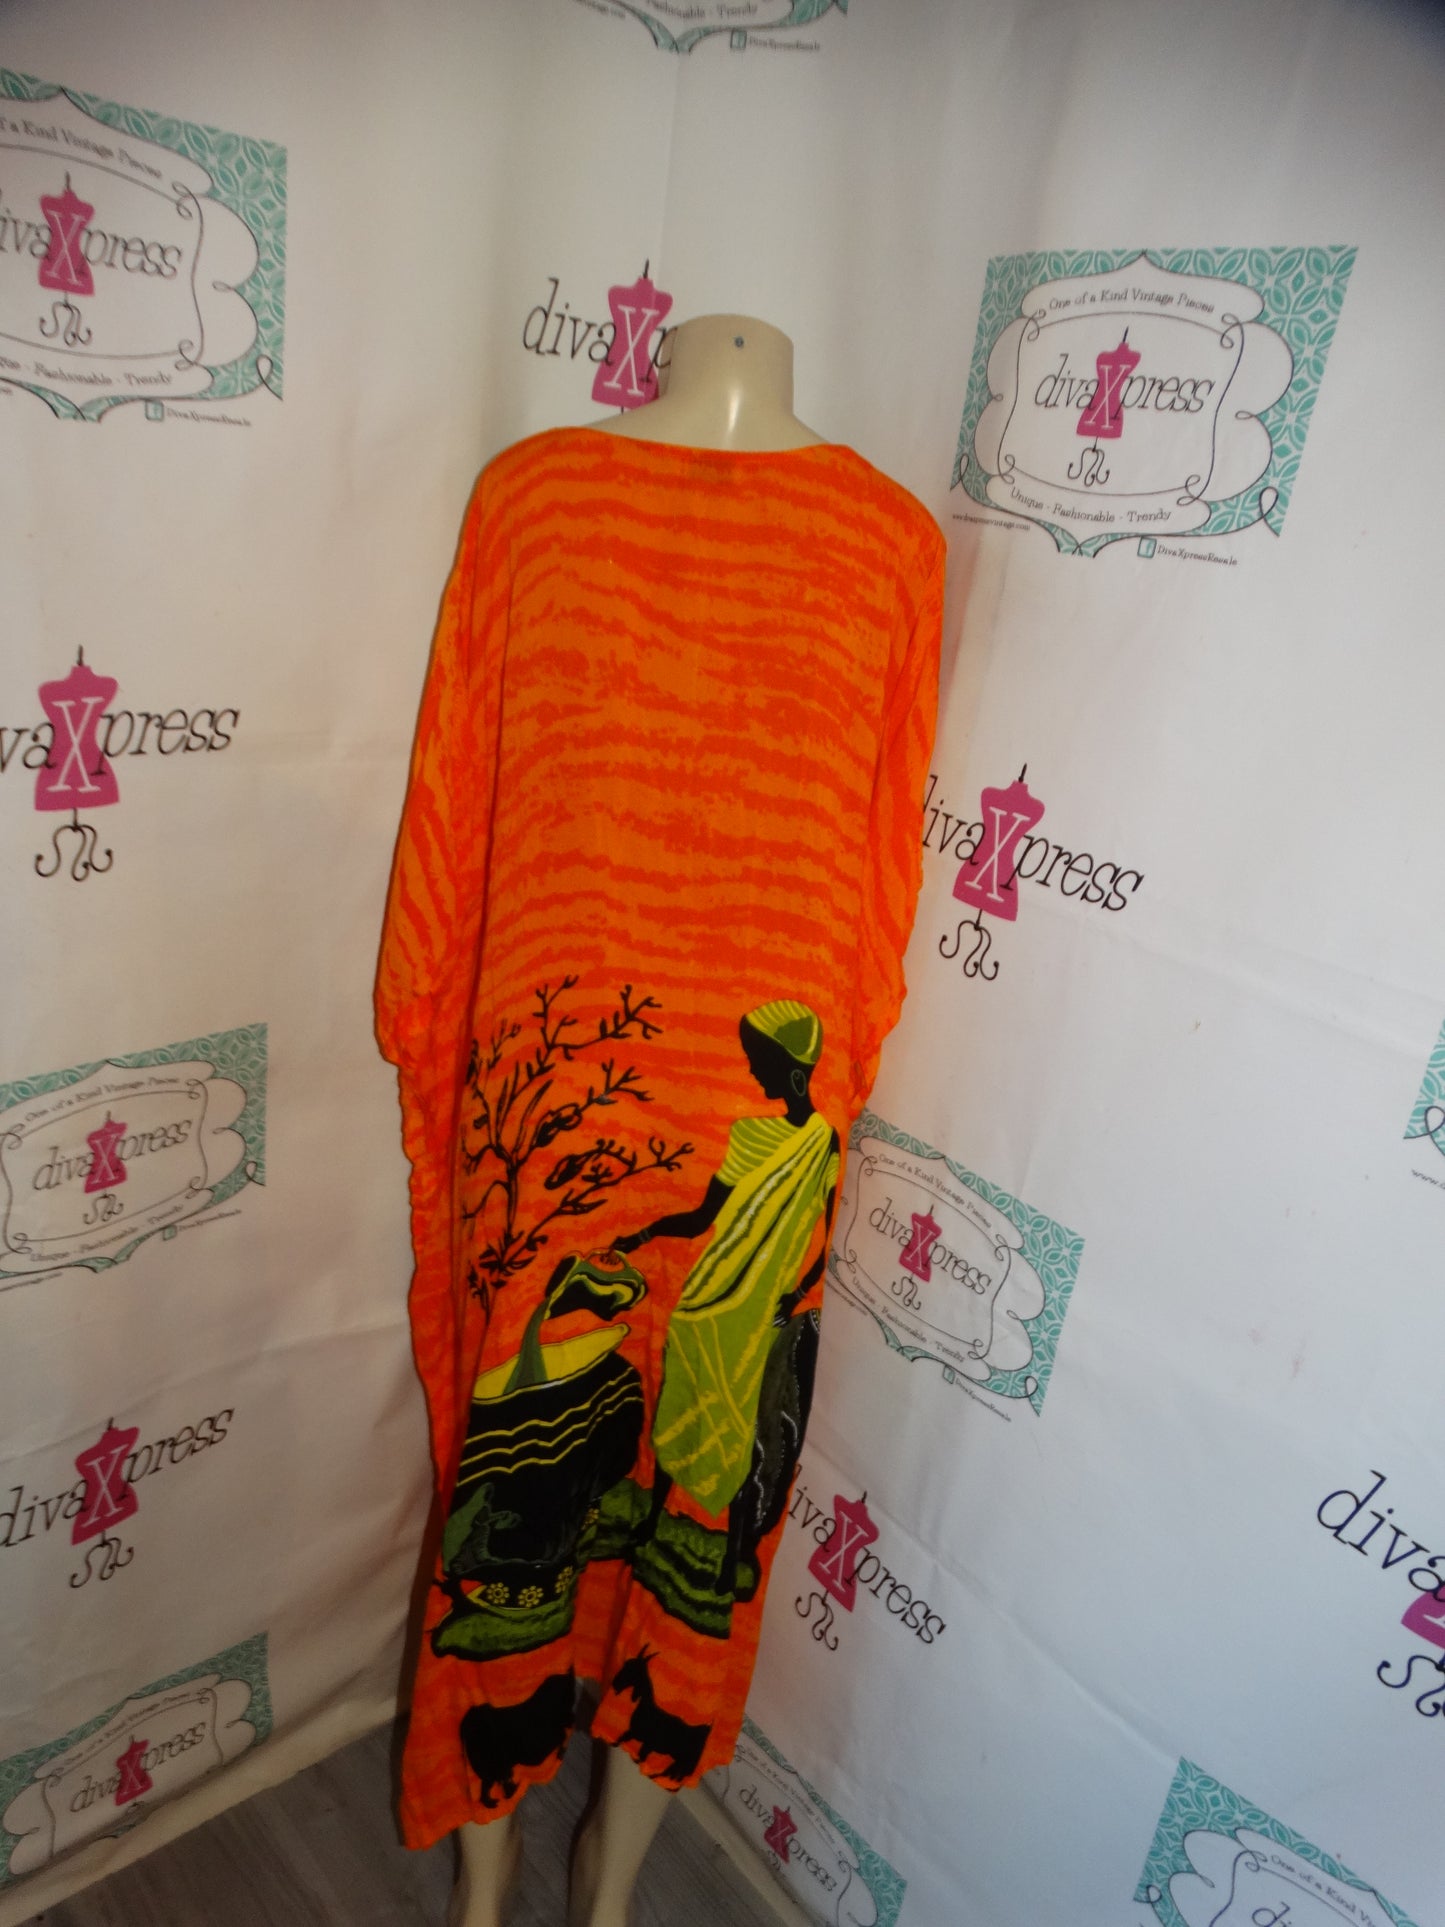 Vintage Sante  Orange Print Dress Size 3x